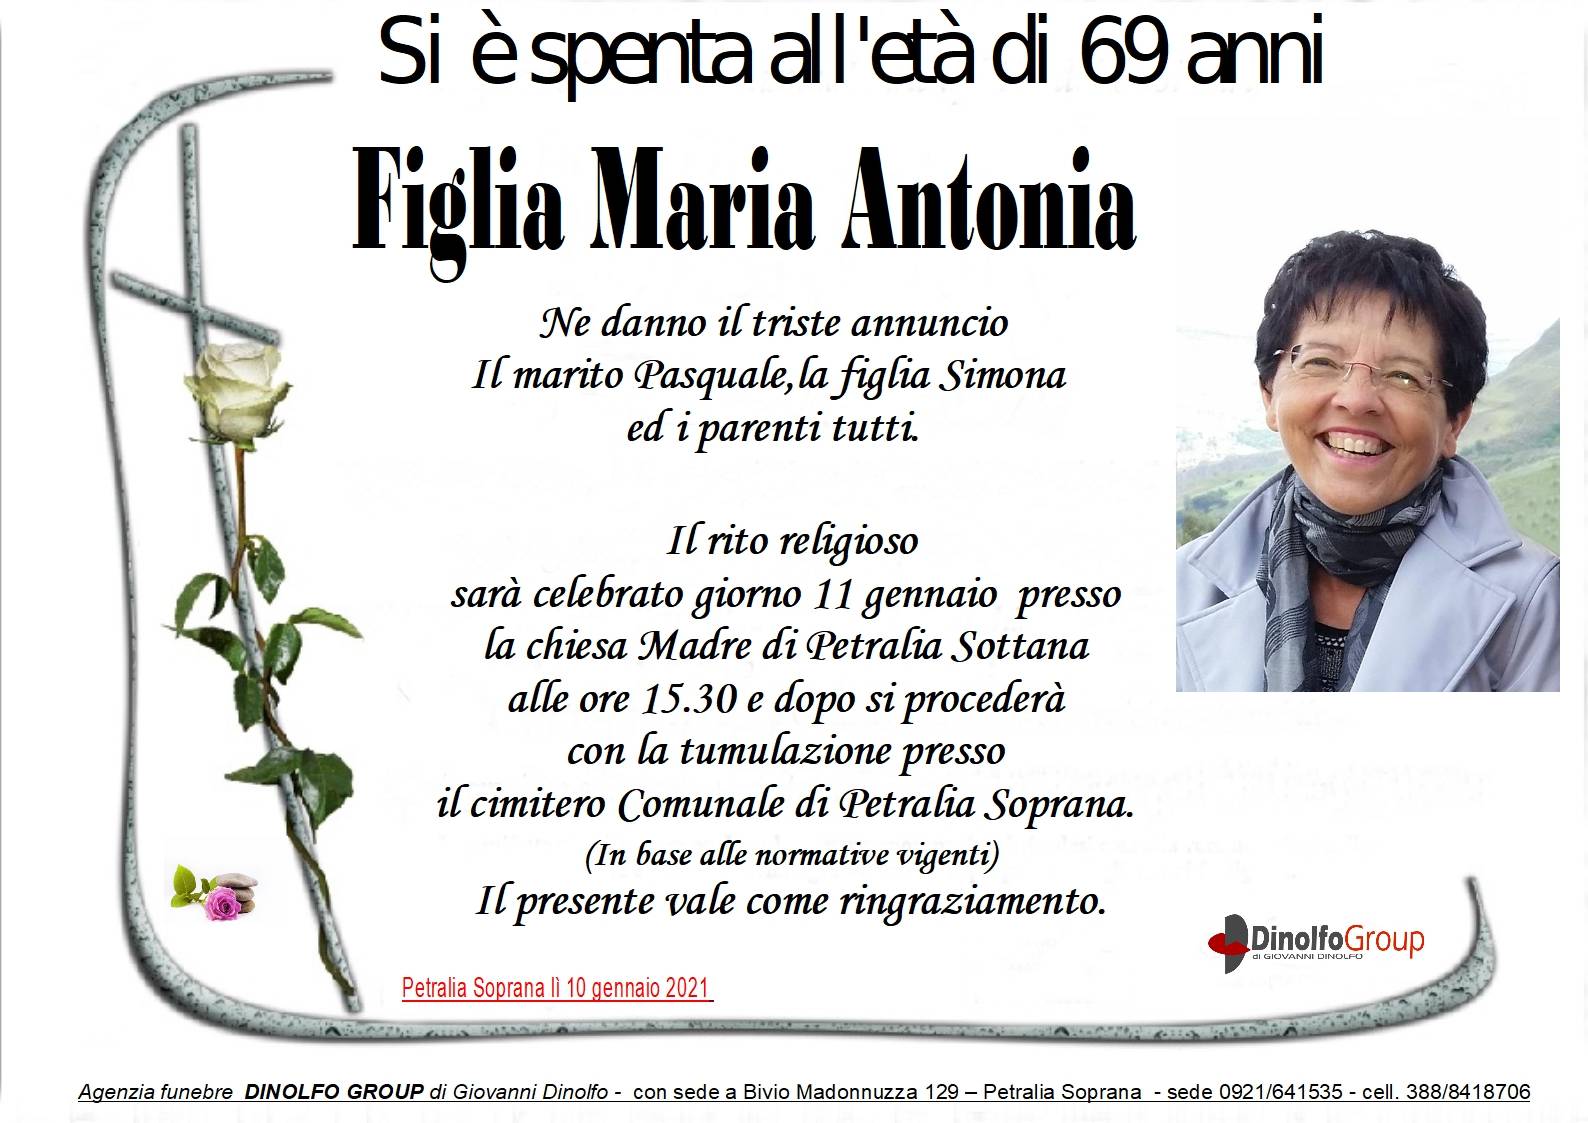 Maria Antonia Figlia